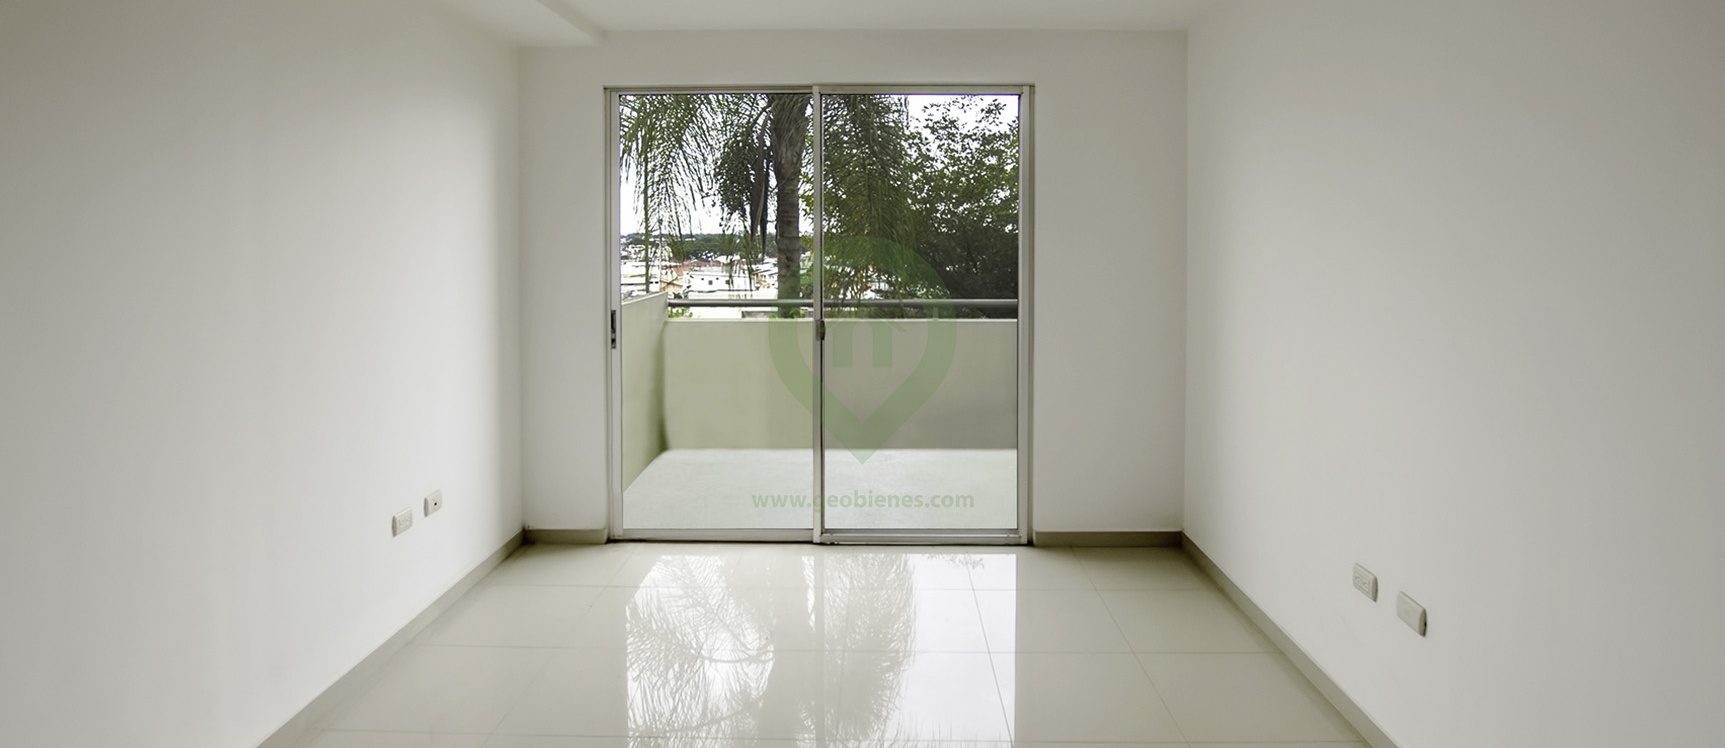 GeoBienes - Departamento en venta en Vista Towers sector norte de Guayaquil - Plusvalia Guayaquil Casas de venta y alquiler Inmobiliaria Ecuador